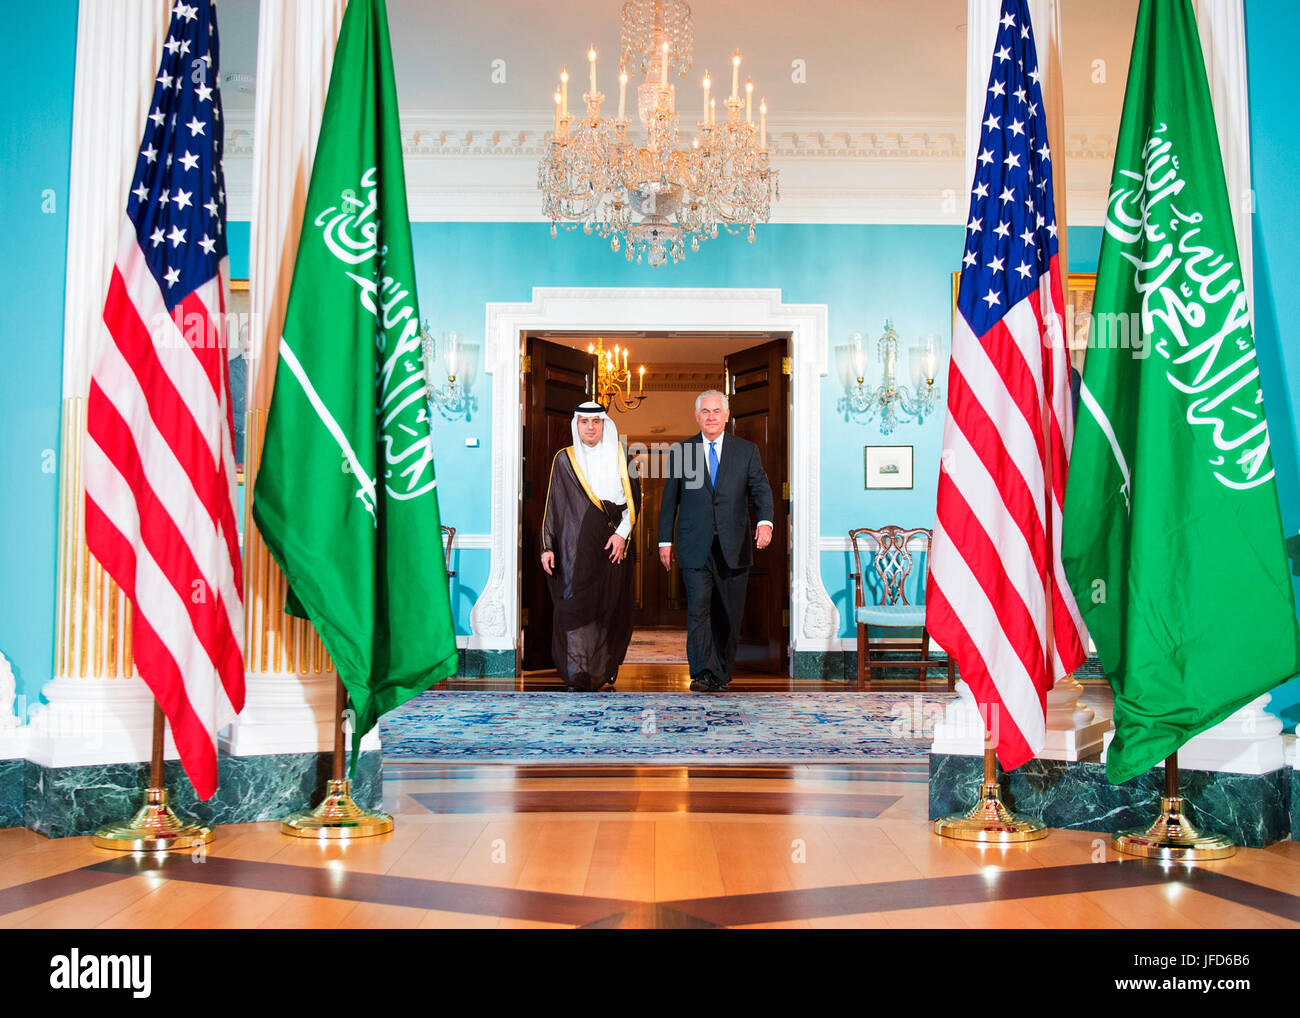 La secrétaire d'État des États-Unis, Rex Tillerson et Ministre saoudien des affaires étrangères Adel al-Jubeir préparer pour répondre aux journalistes avant leur réunion bilatérale au département d'État des États-Unis à Washington, D.C., le 13 juin 2017. Banque D'Images